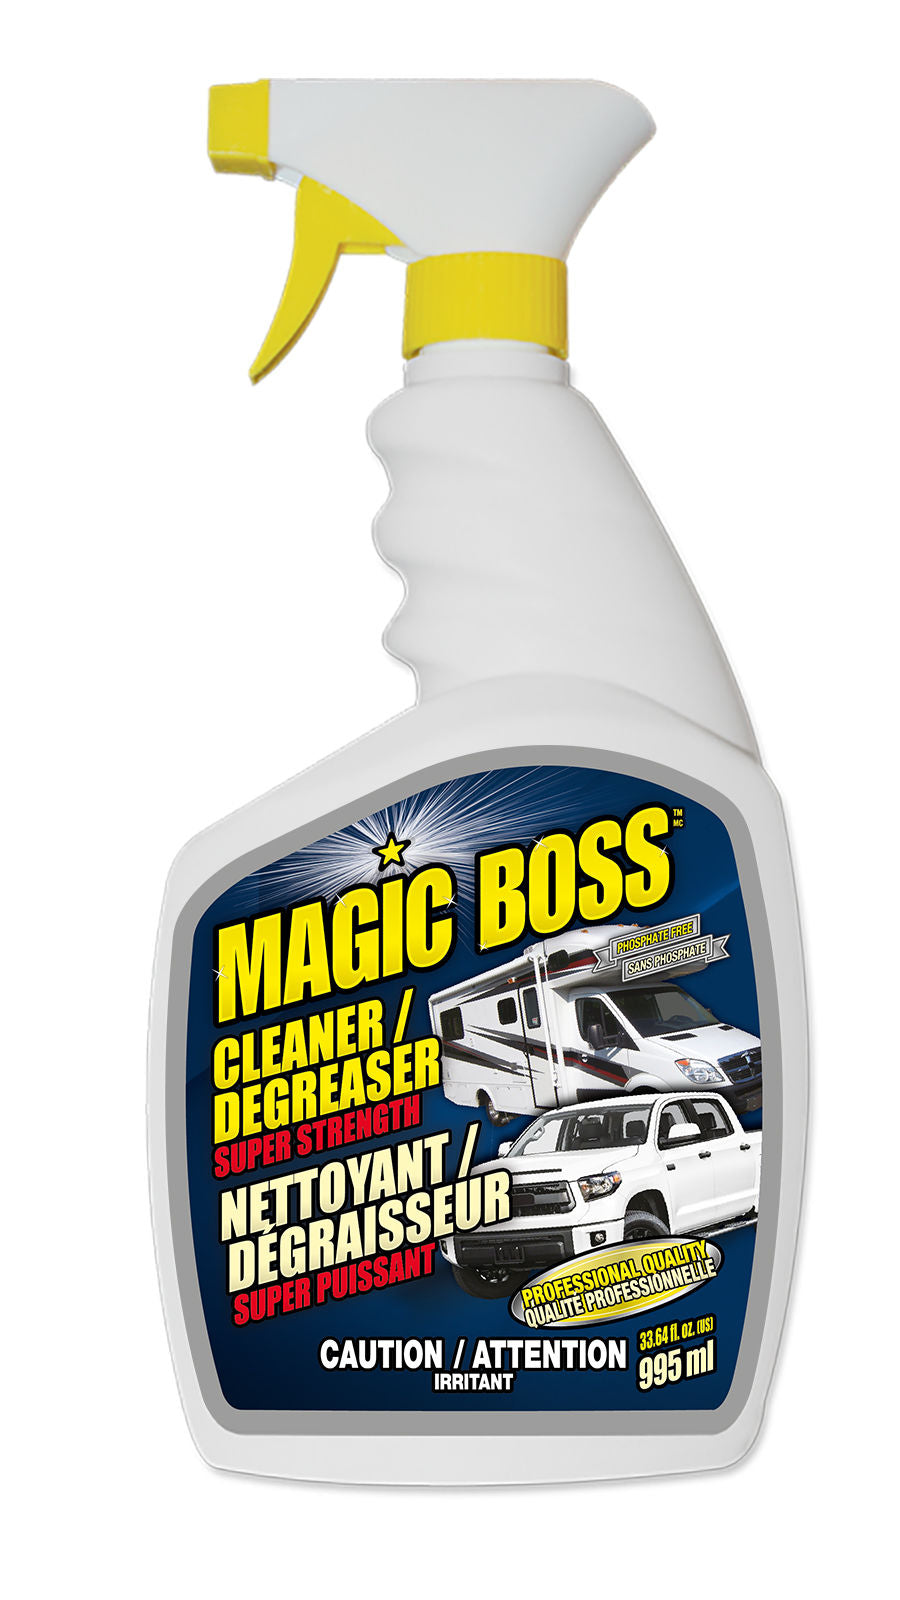 Magic Boss 1600 - Box of 12, Cleaner / Degreaser Super Strength (995 ml)